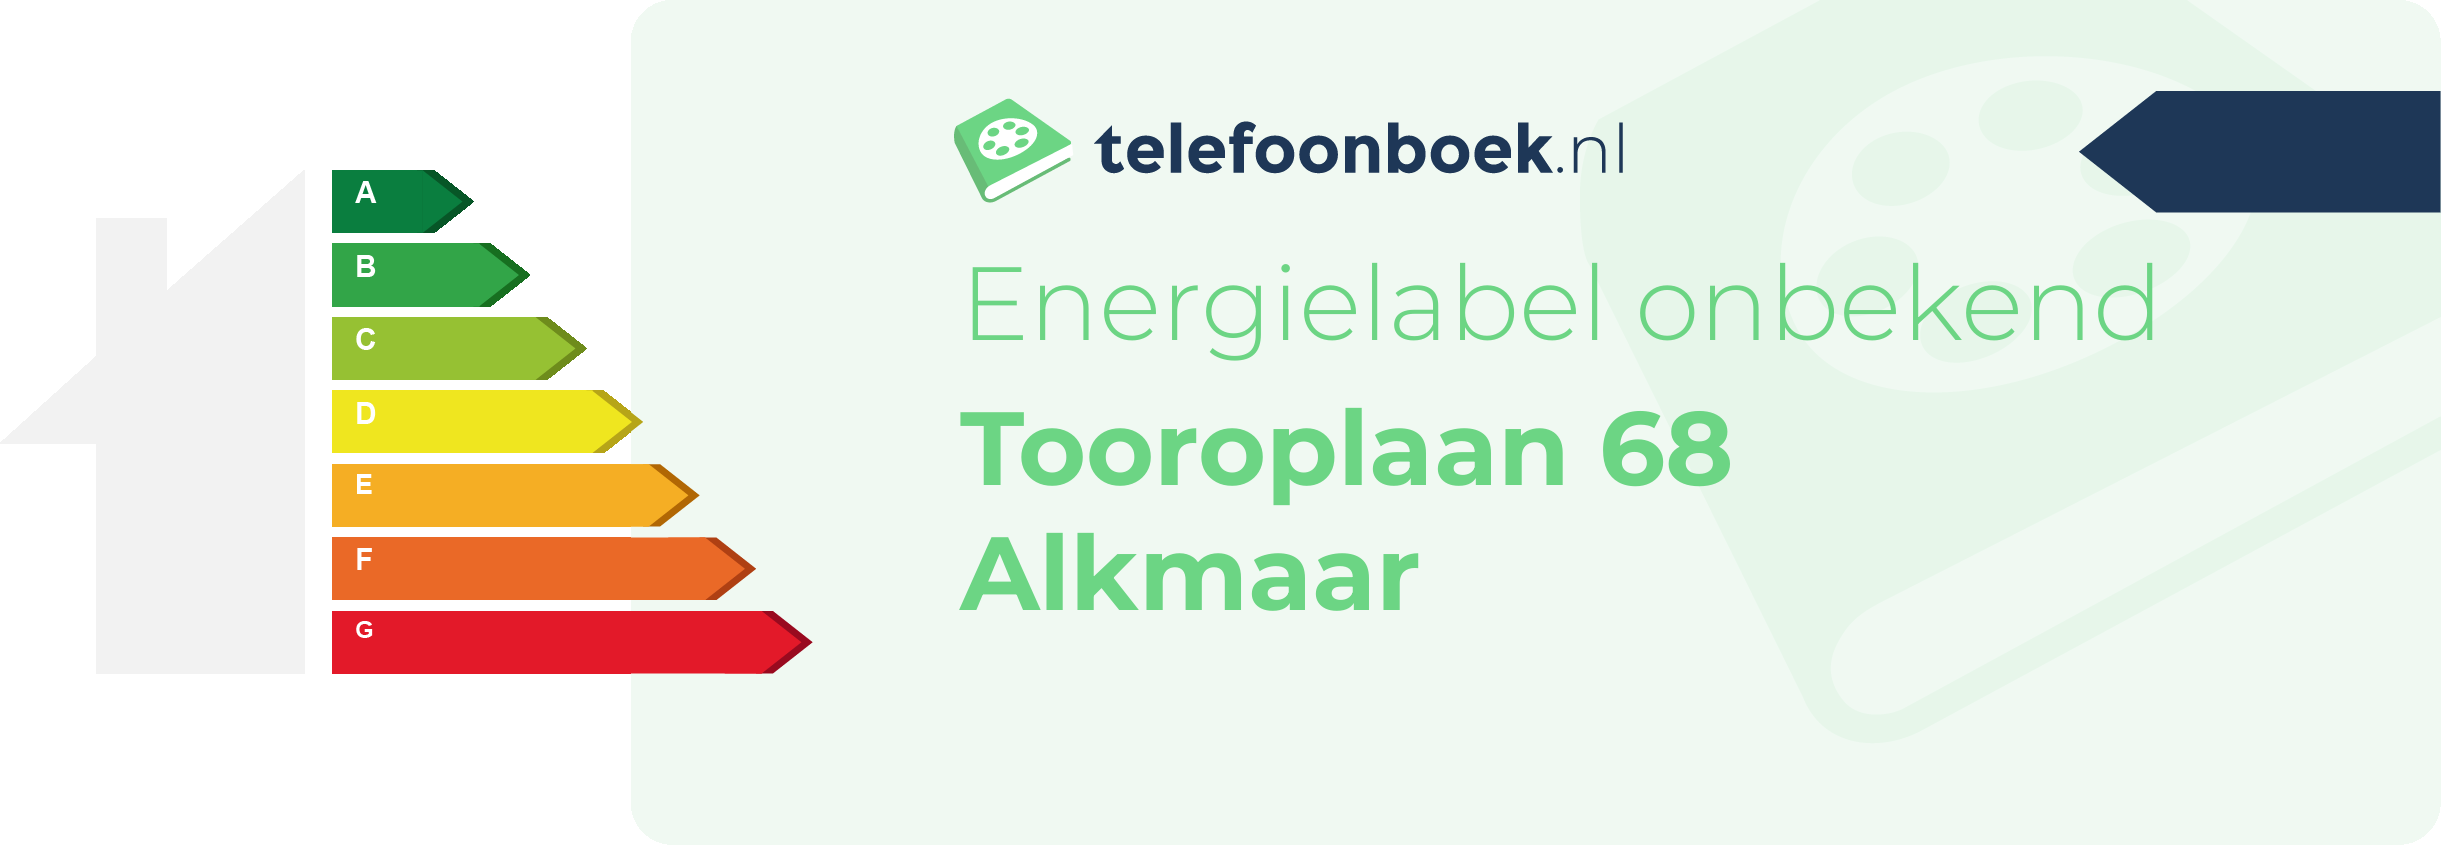 Energielabel Tooroplaan 68 Alkmaar